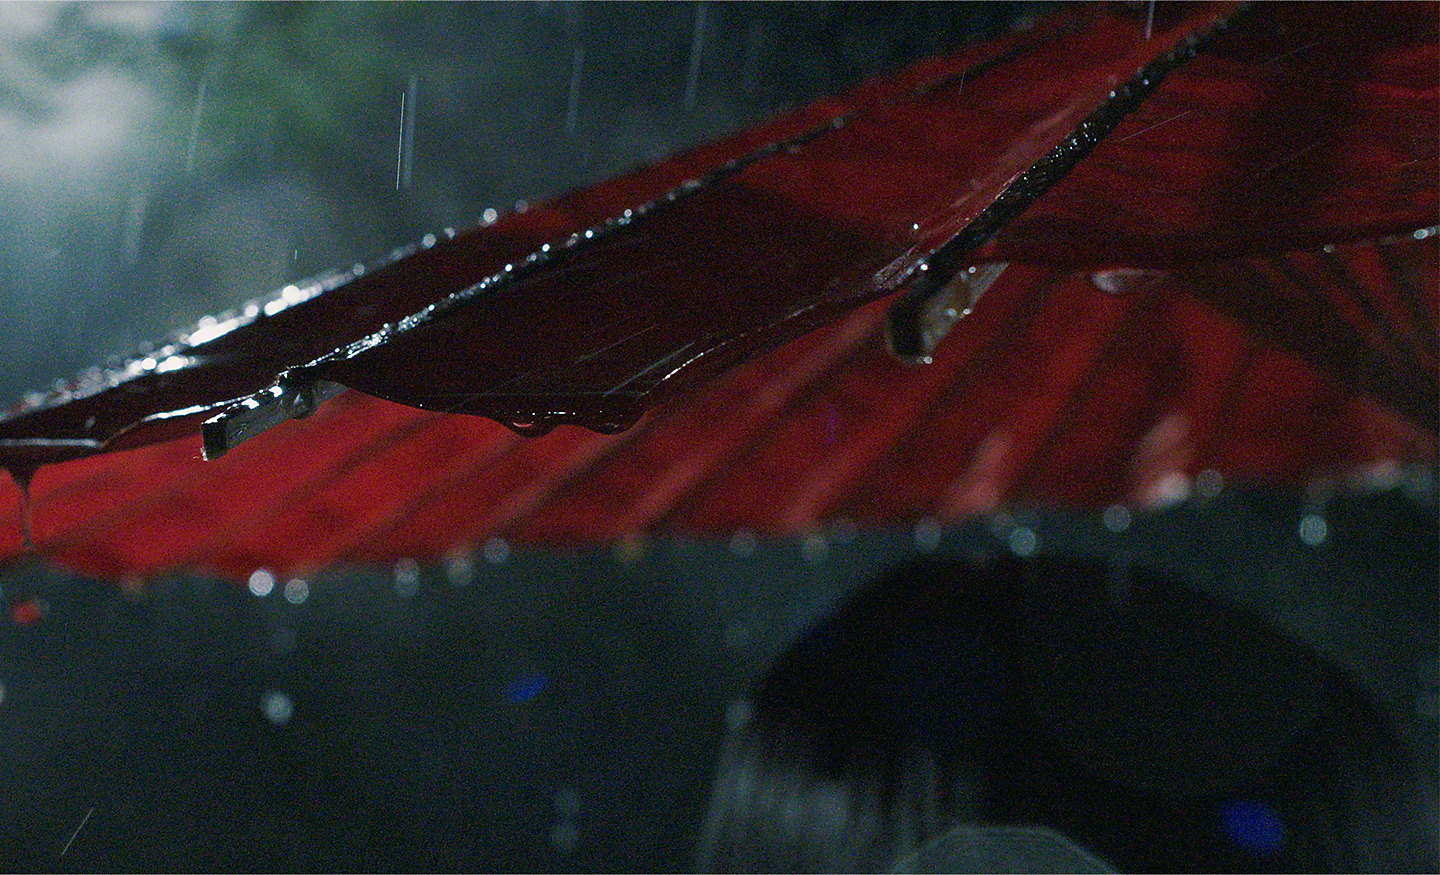 Lluvia cayendo sobre una sombrilla roja